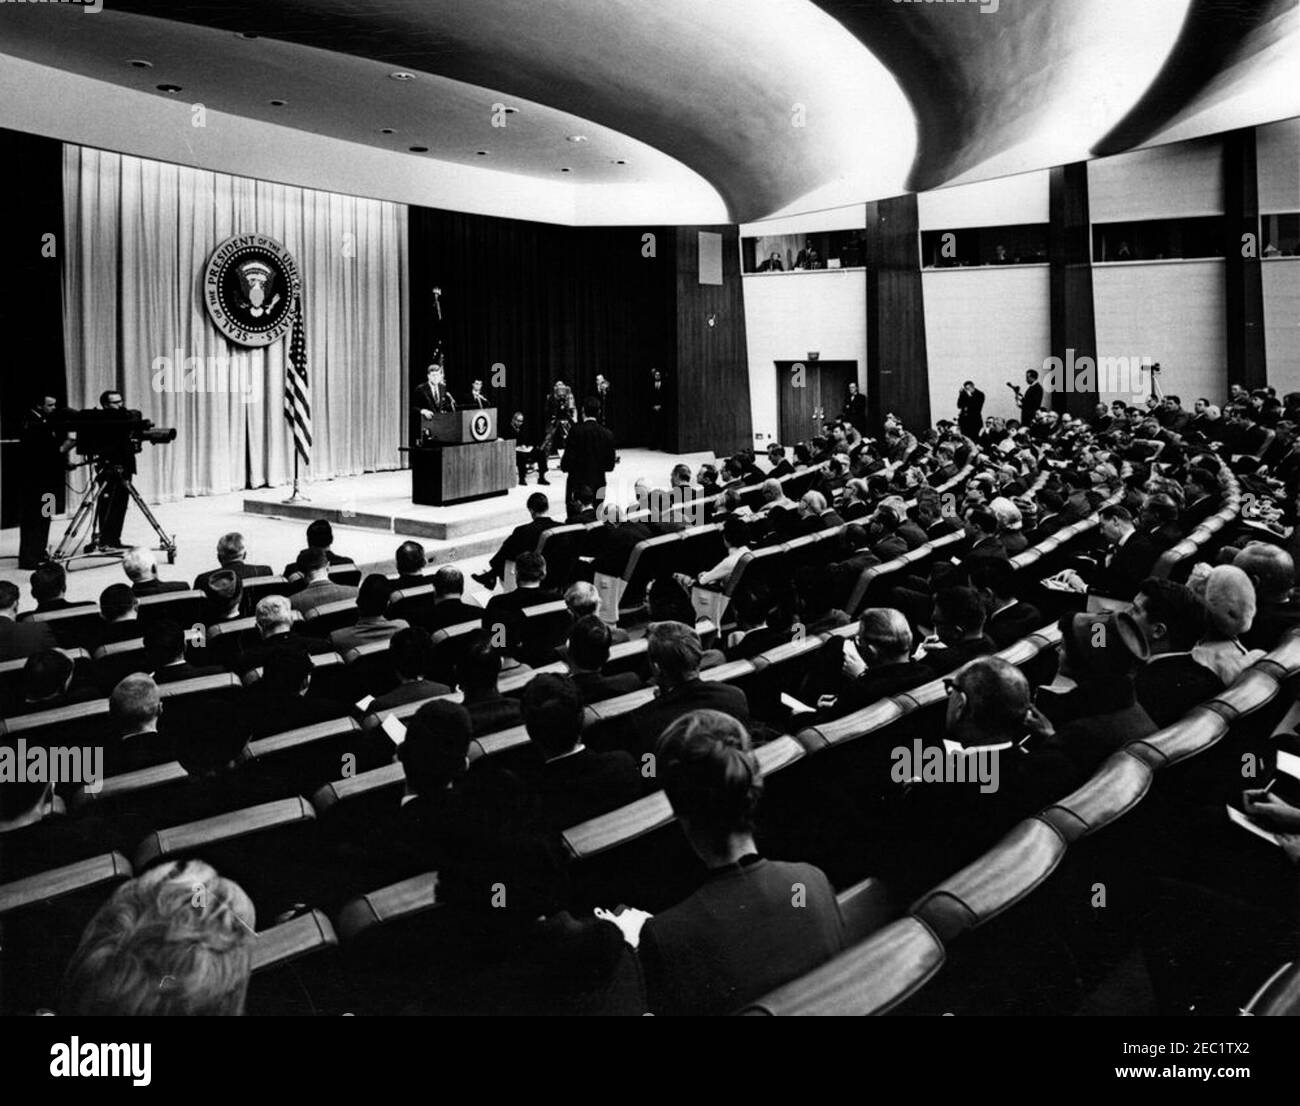 Pressekonferenz, State Department Auditorium, 4:00pm Uhr. Präsident John F. Kennedy (am Rednerpult) spricht bei einer Pressekonferenz im Auditorium des Außenministeriums, Washington, D.C. Associate Press Secretary Andrew Hatcher sitzt auf der Bühne, rechts vom Rednerpult. Stockfoto